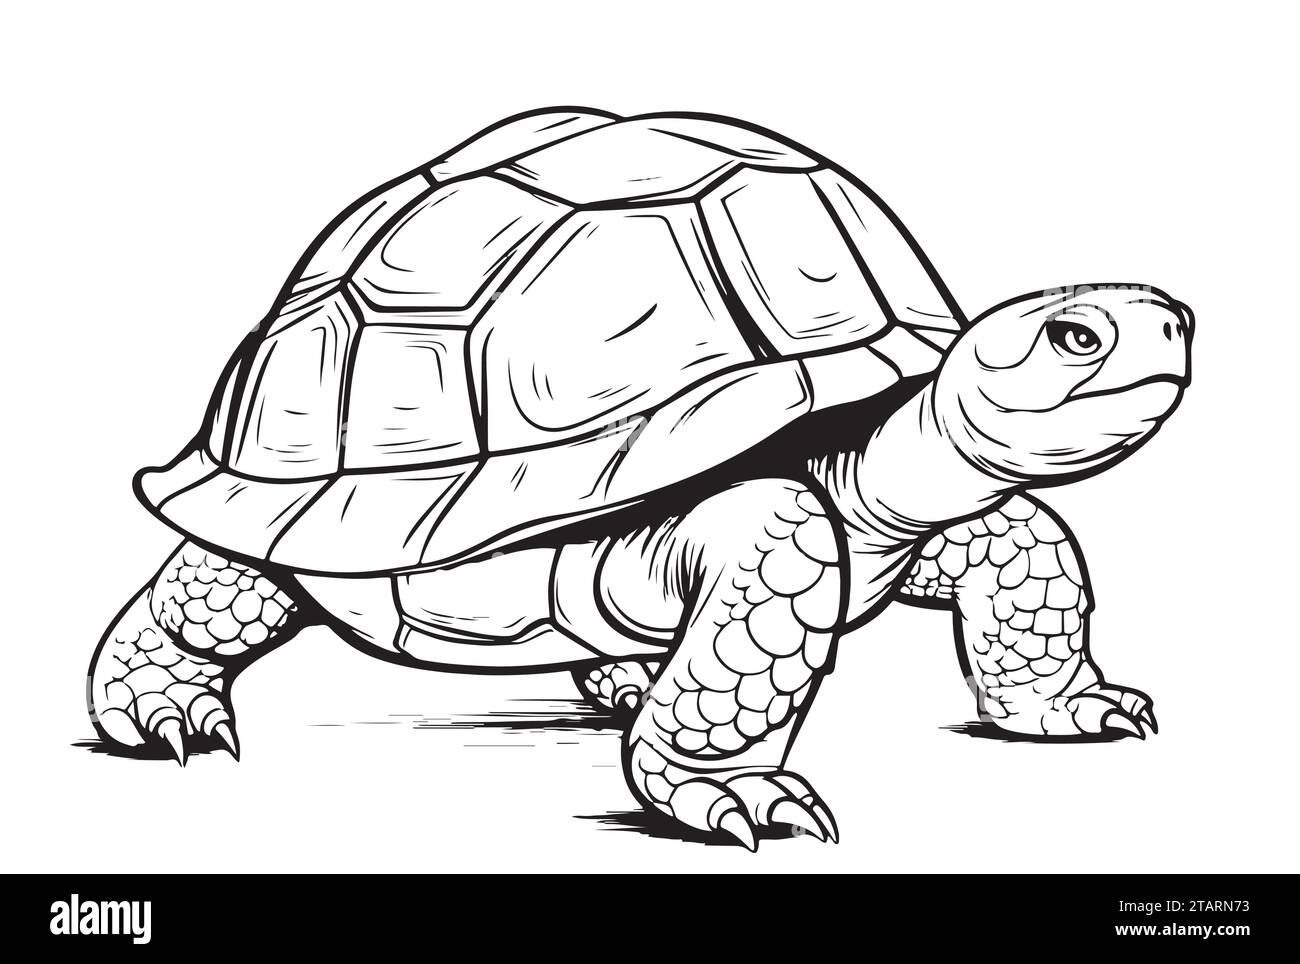 Desert Tortoise hand drawing vector illustration isolated on white background Stock Vector